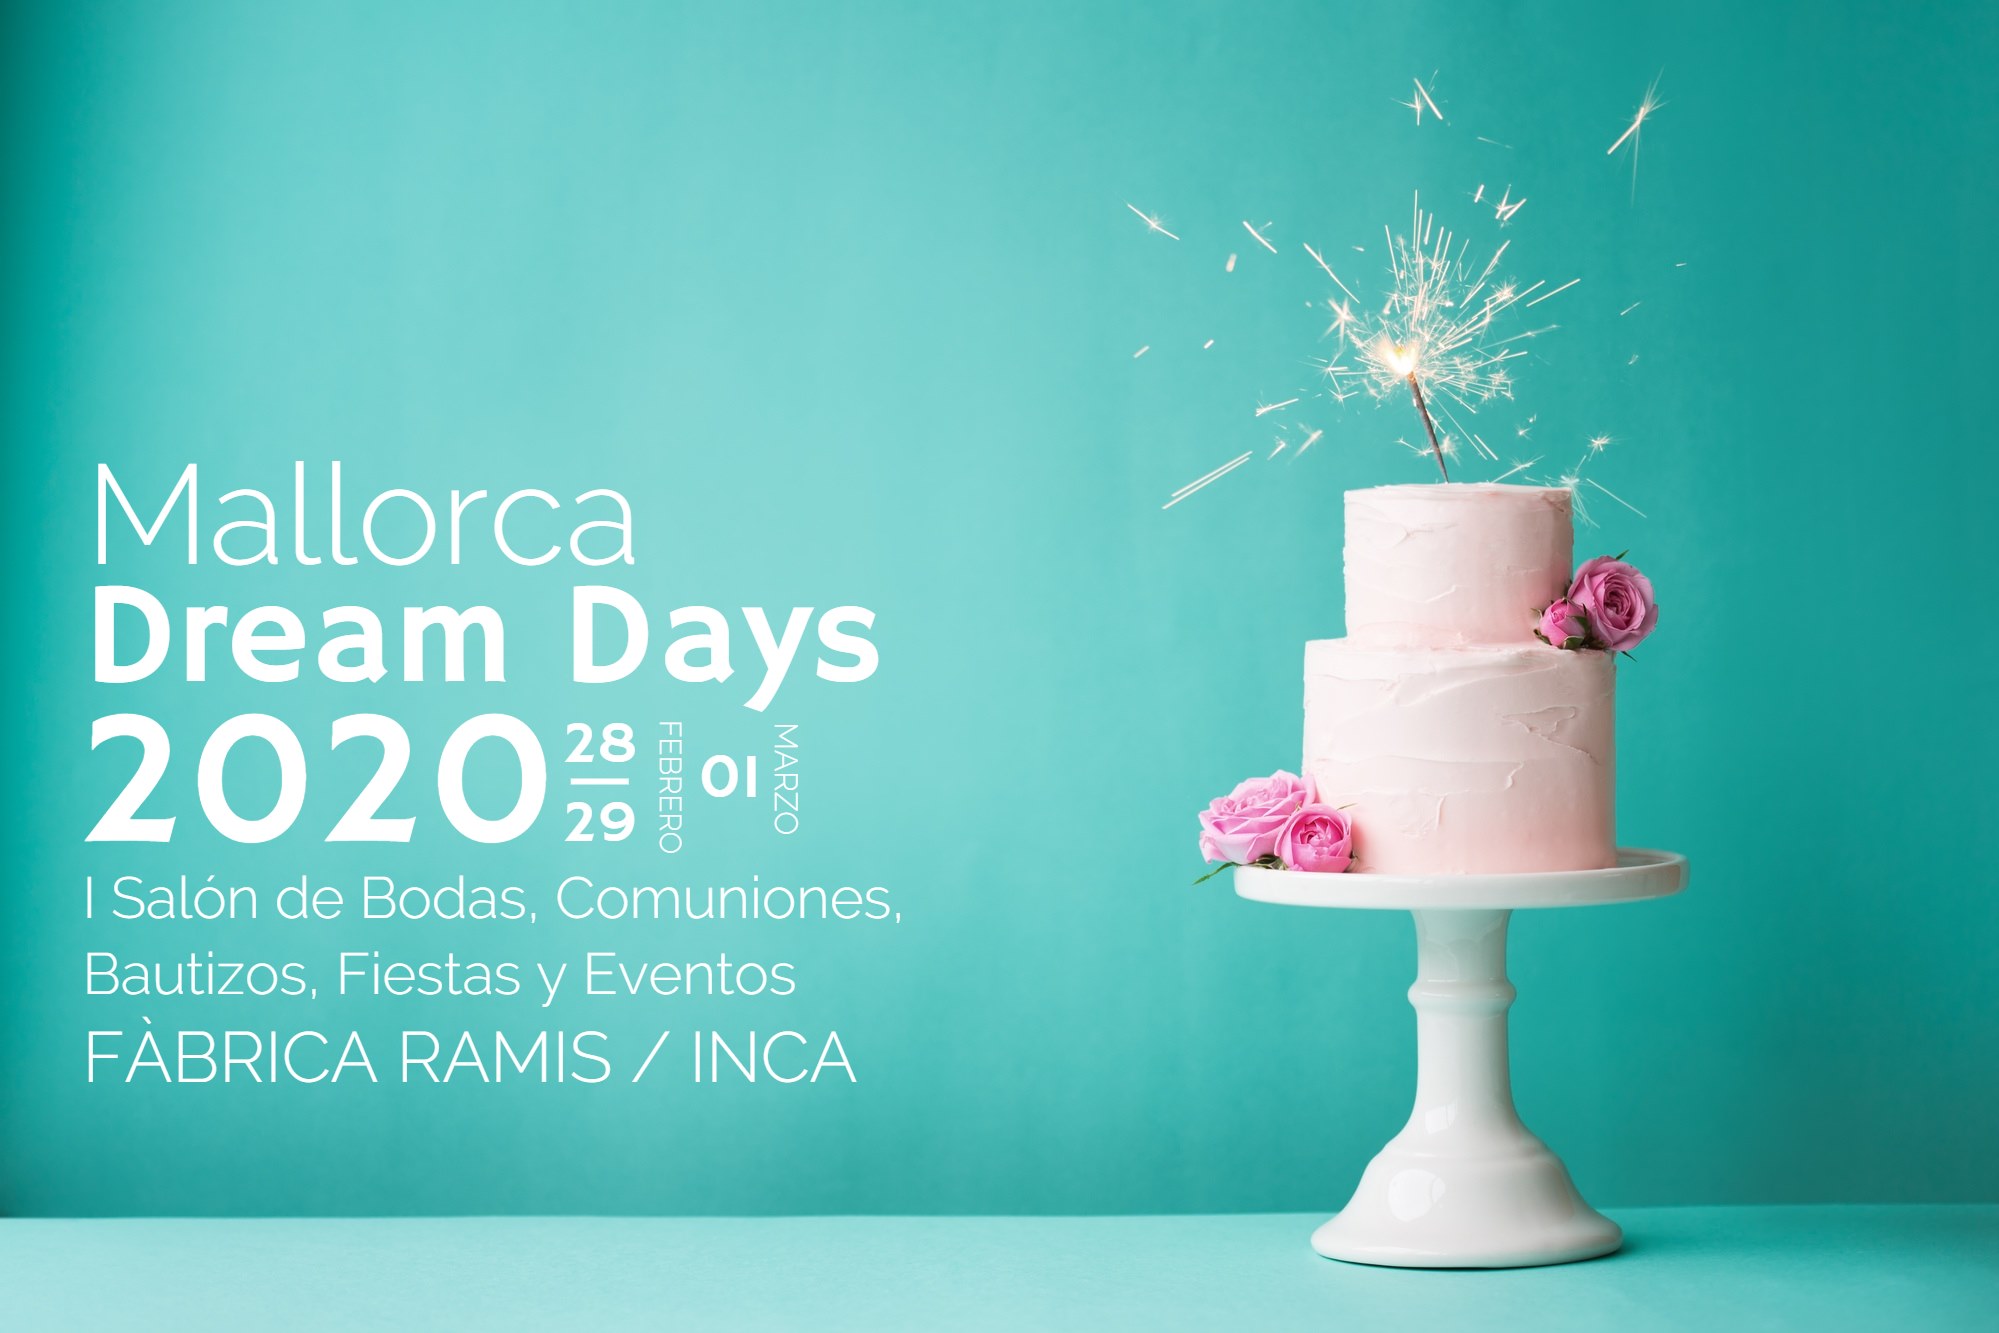 Participamos en la feria Mallorca Dream Days en Inca los dias 28, 29 y 1 de marzo.